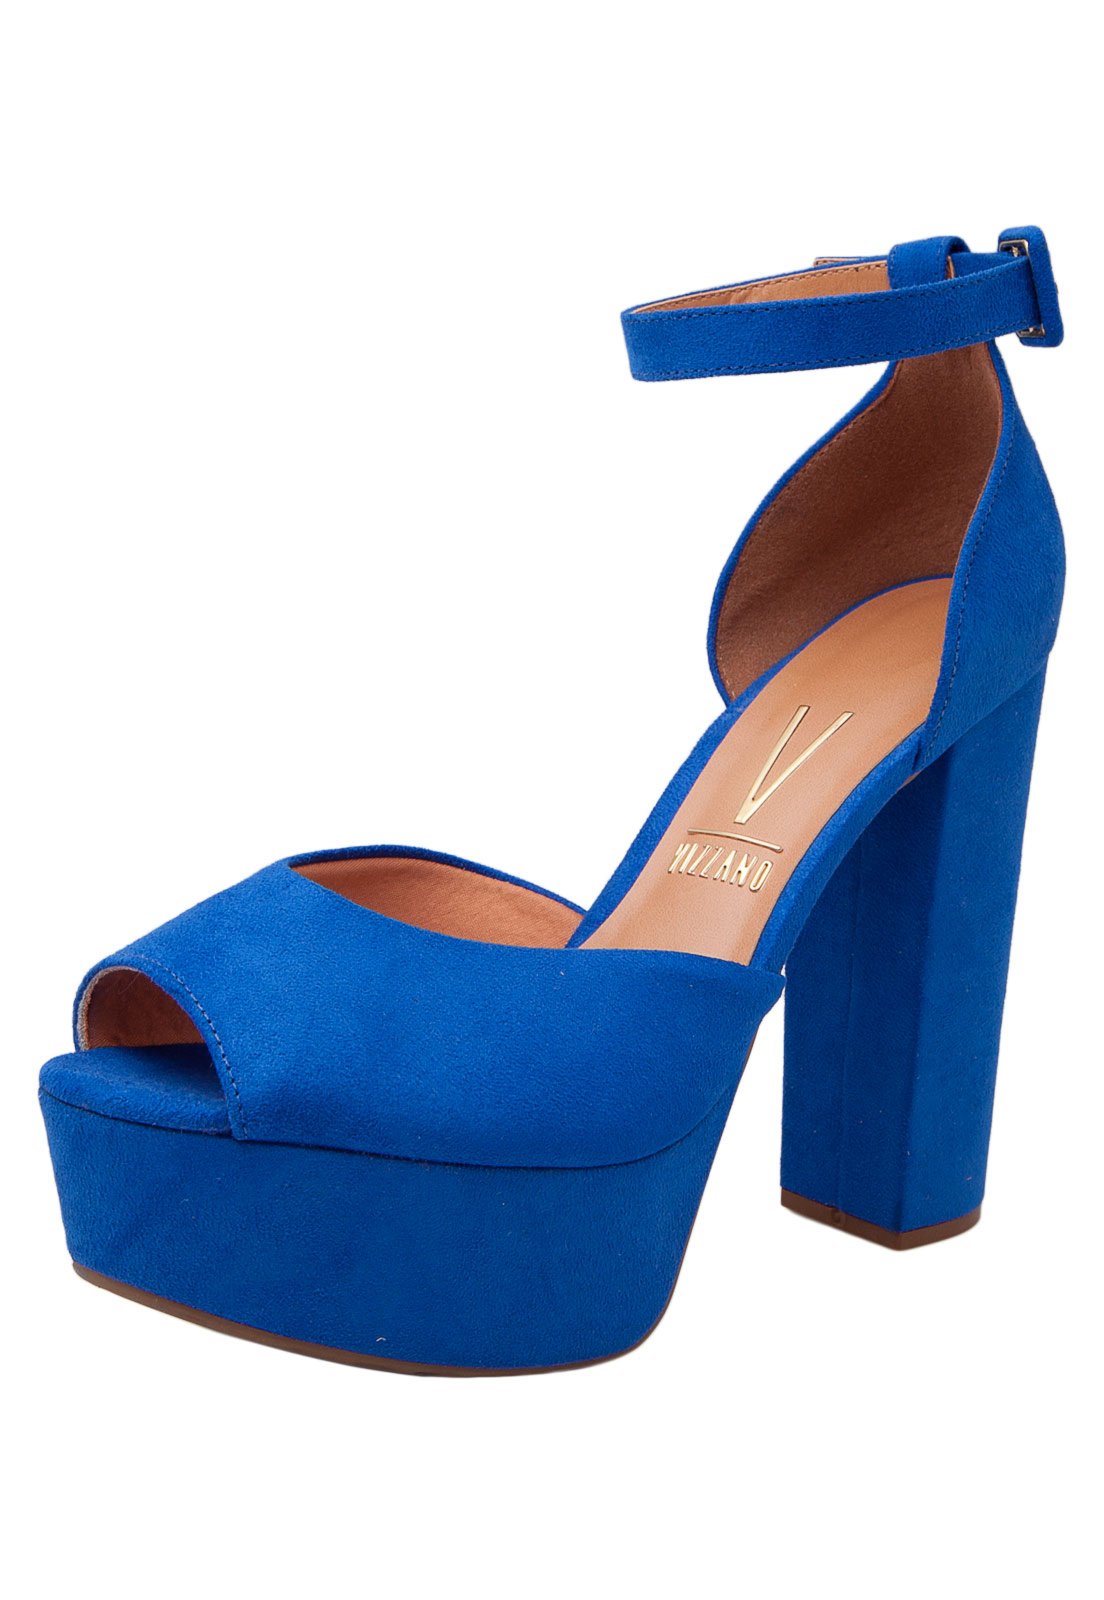 sandalia vizzano azul